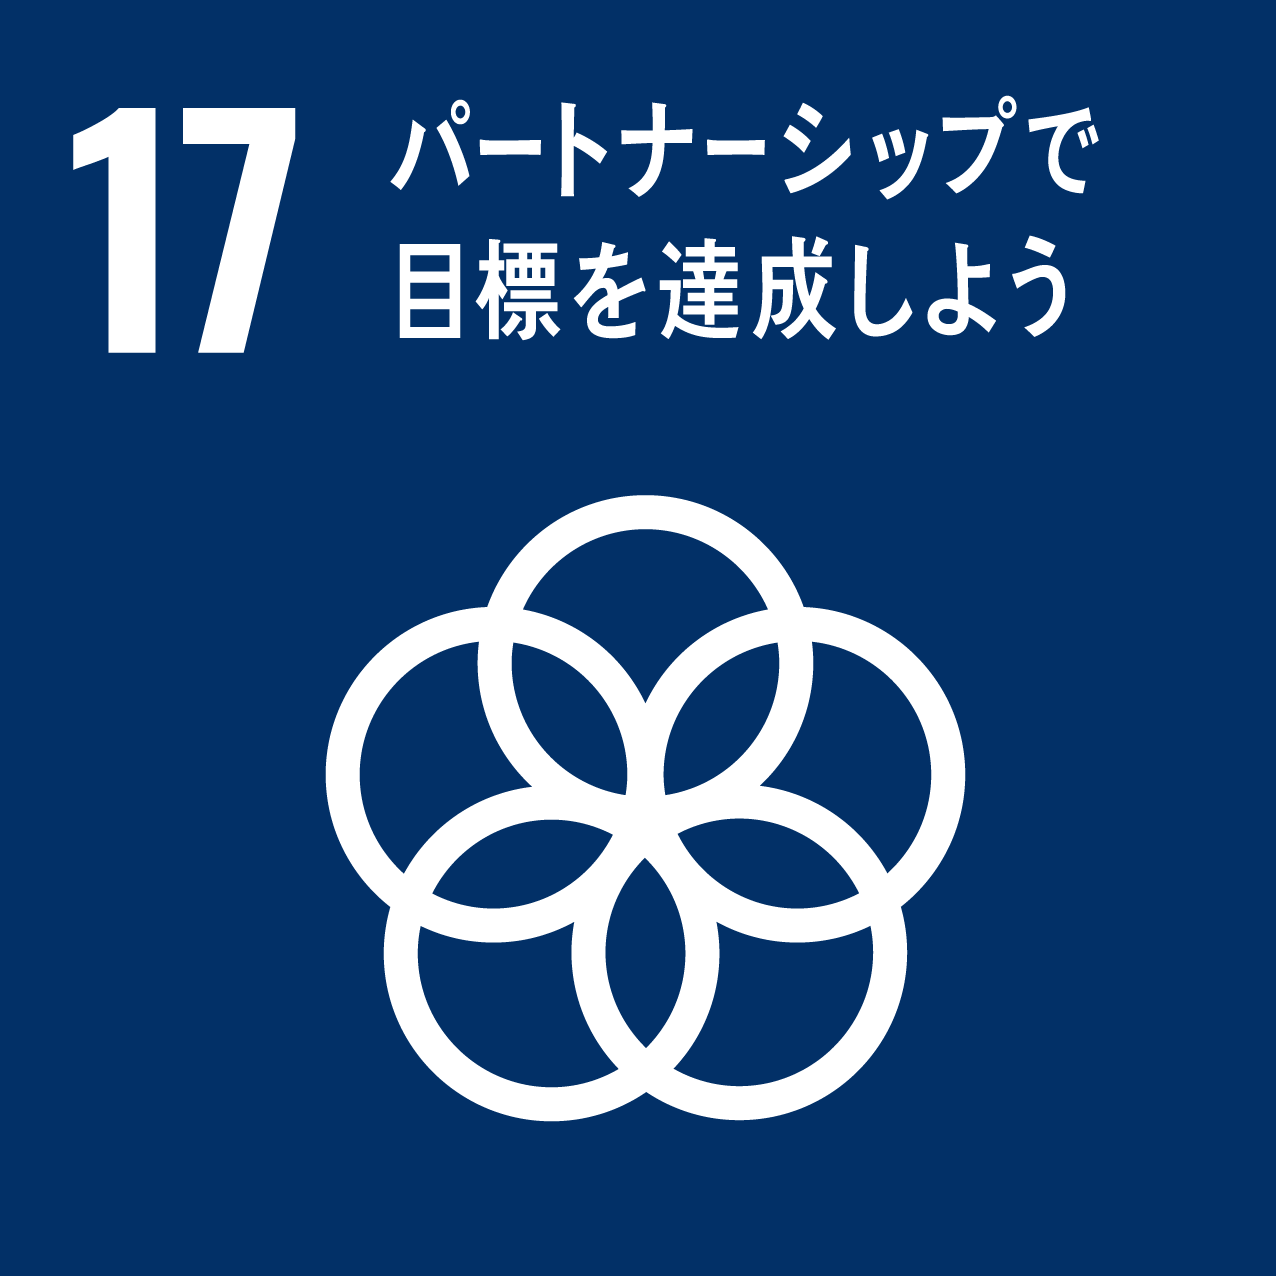 SDGs『17パートナーシップで目標を達成しよう』のロゴ